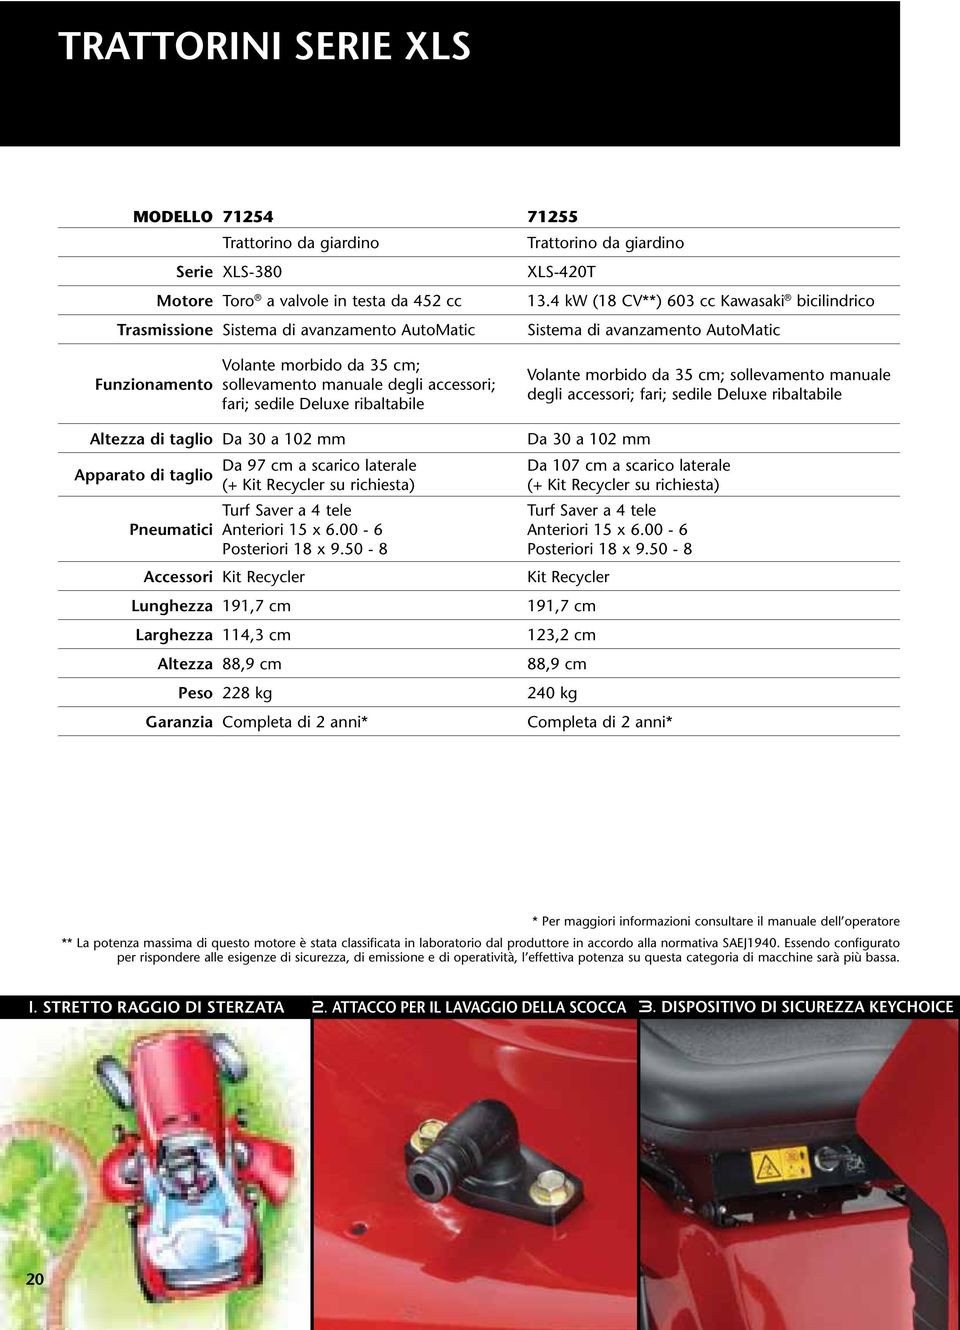 accessori; fari; sedile Deluxe ribaltabile Altezza di taglio Da 30 a 10 mm Da 97 cm a scarico laterale Apparato di taglio (+ Kit Recycler su richiesta) Turf Saver a 4 tele Pneumatici Anteriori 15 x 6.